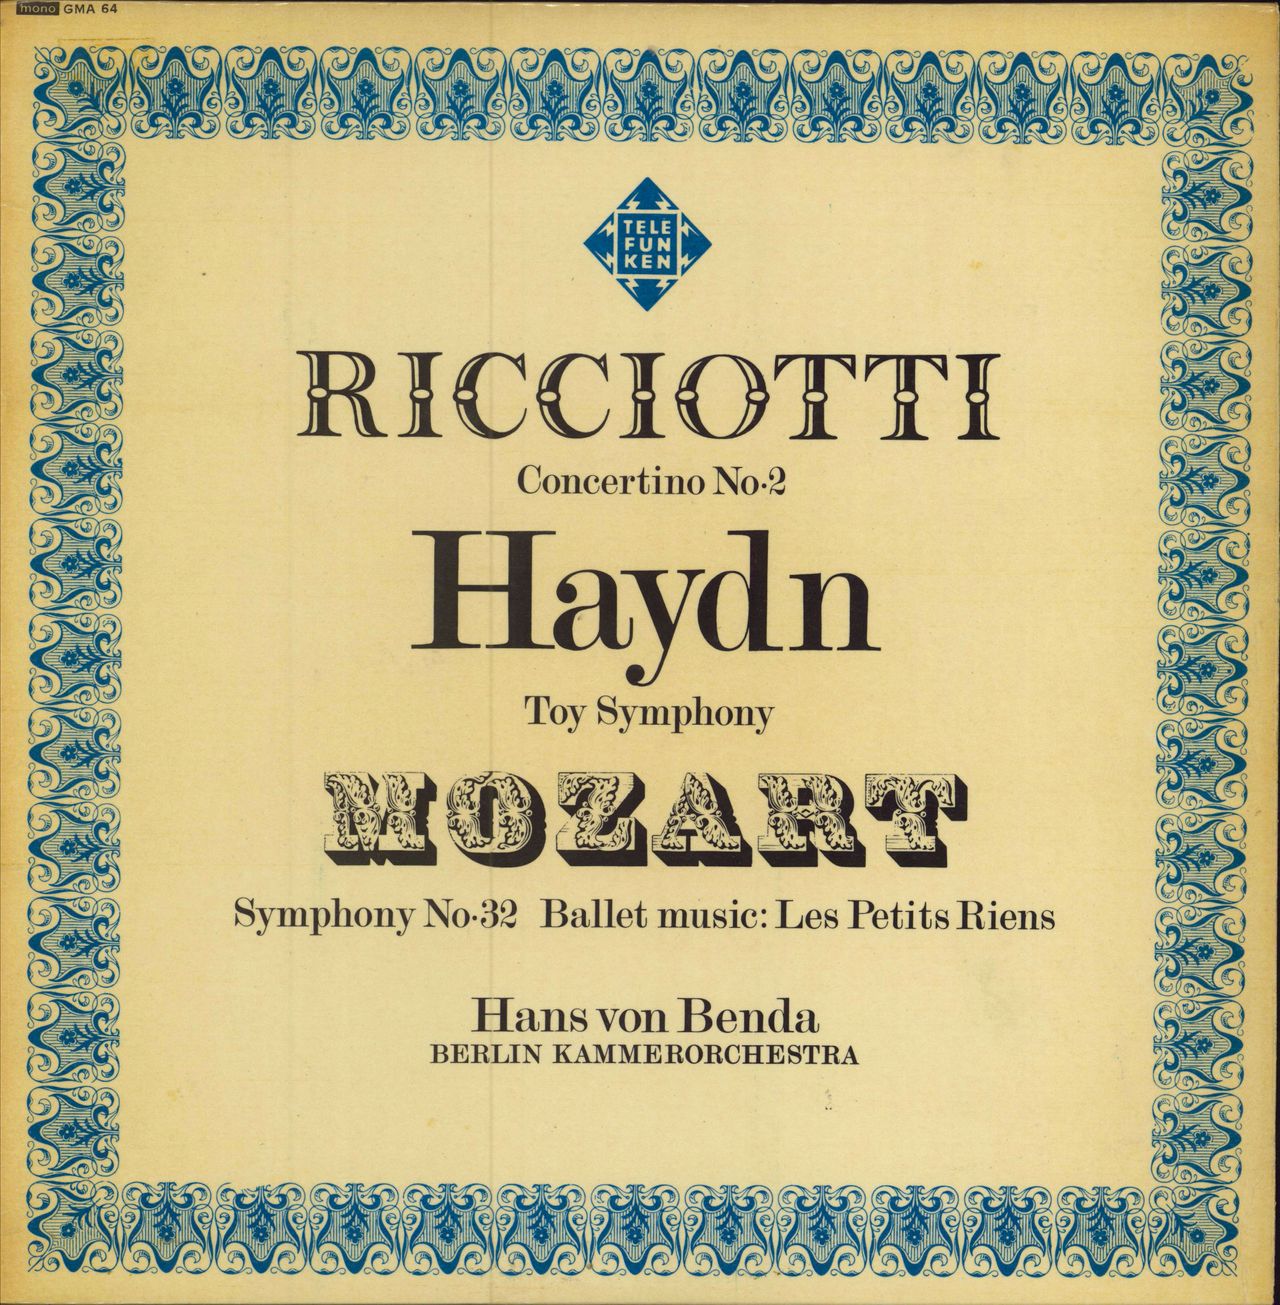 Berlin Kammerorchestra Ricciotti: Concertino No. 2 / Haydn: Toy Symphony / Mozart: Symphony No. 32 & Les Petits Riens UK vinyl LP album (LP record) GMA64